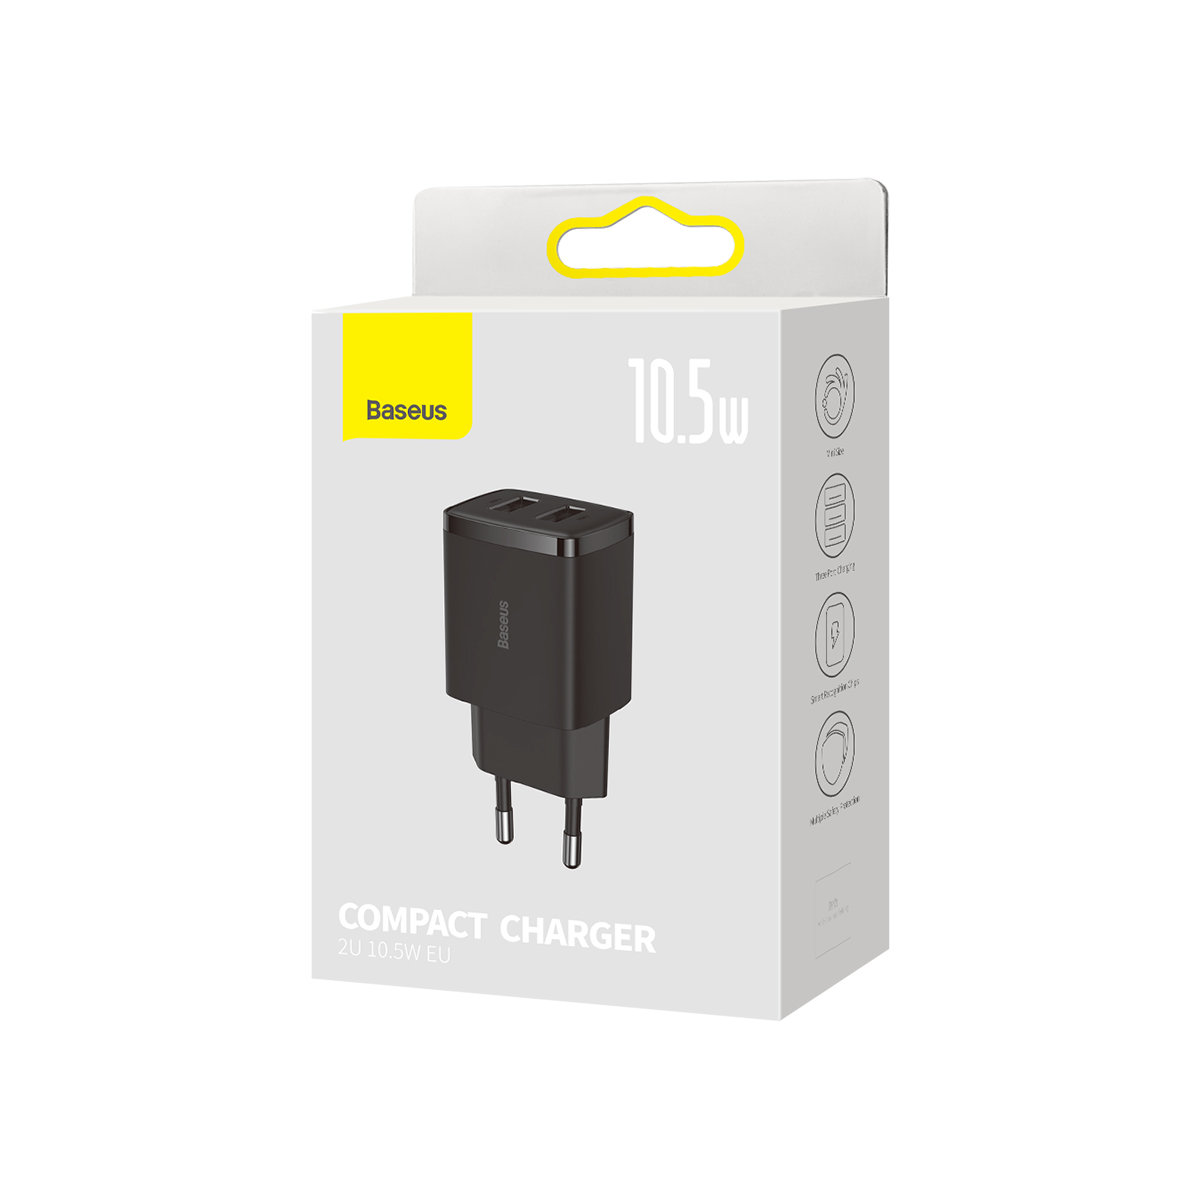 adowarka sieciowa Baseus Compact 2x USB 10.5W CCXJ010202 czarna / 4